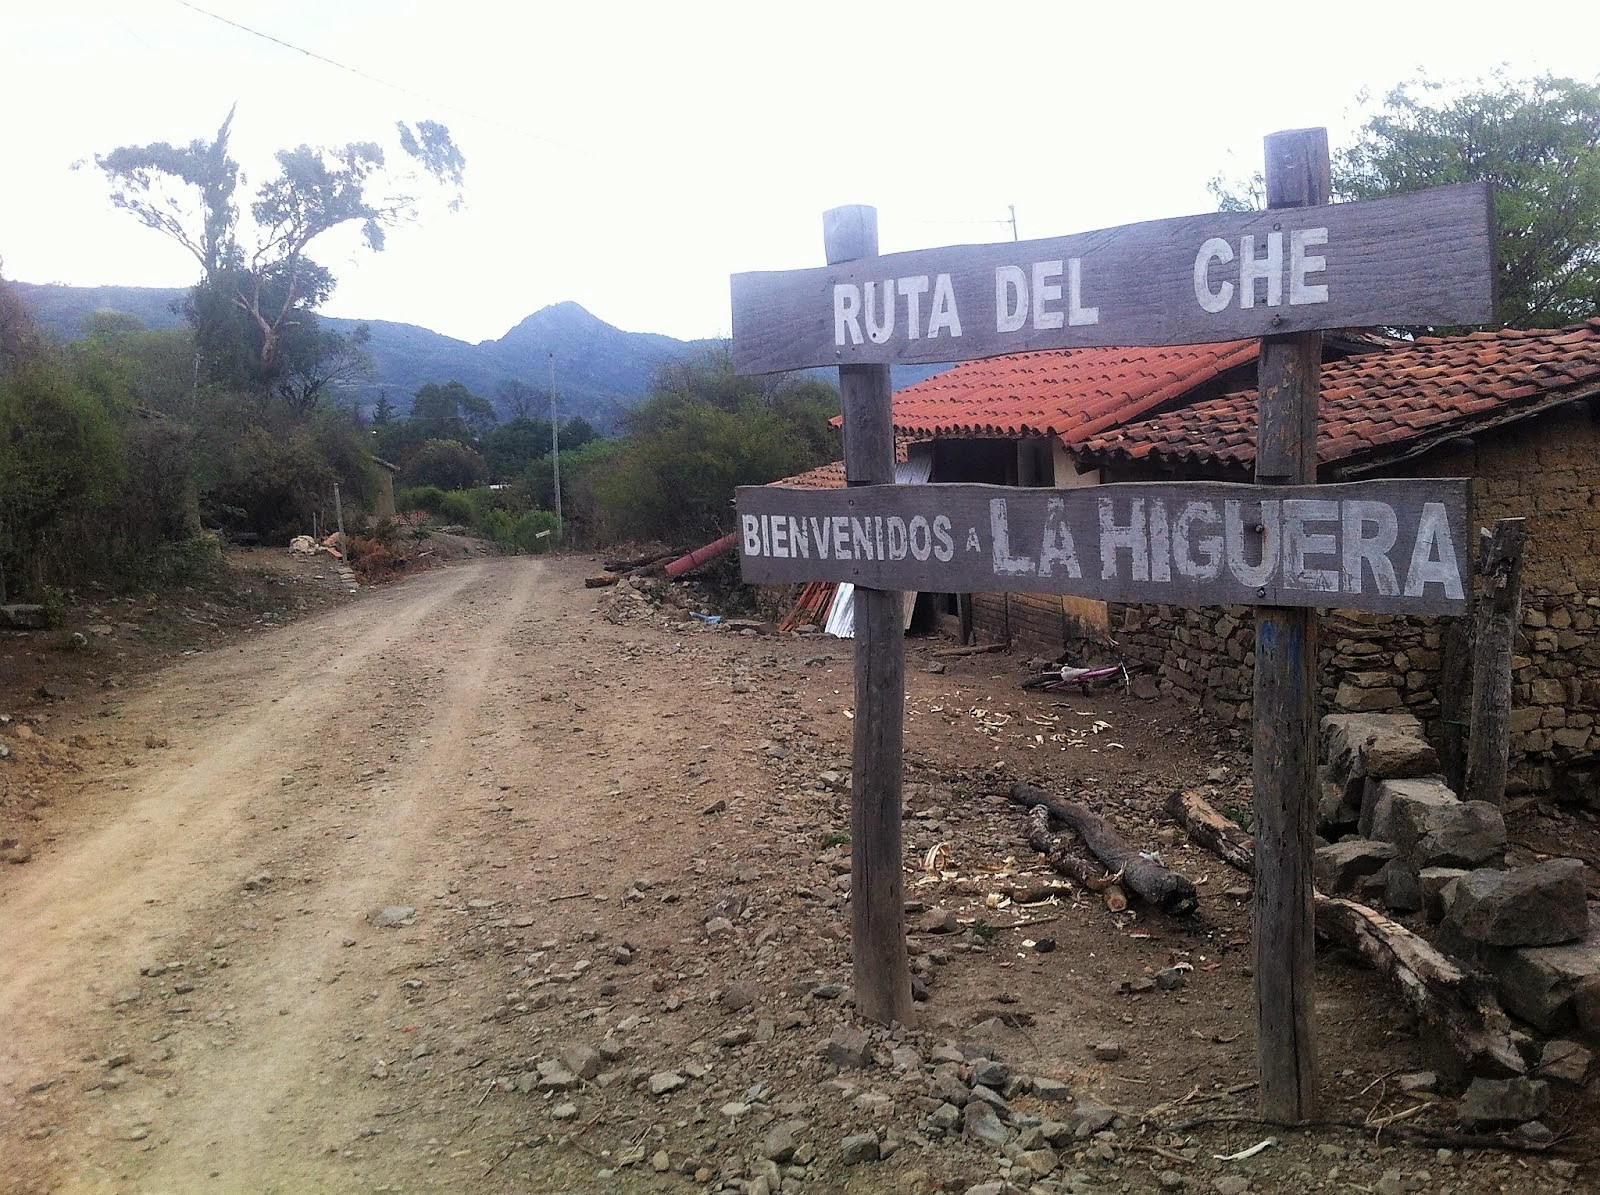 RutadelchelaHiguera